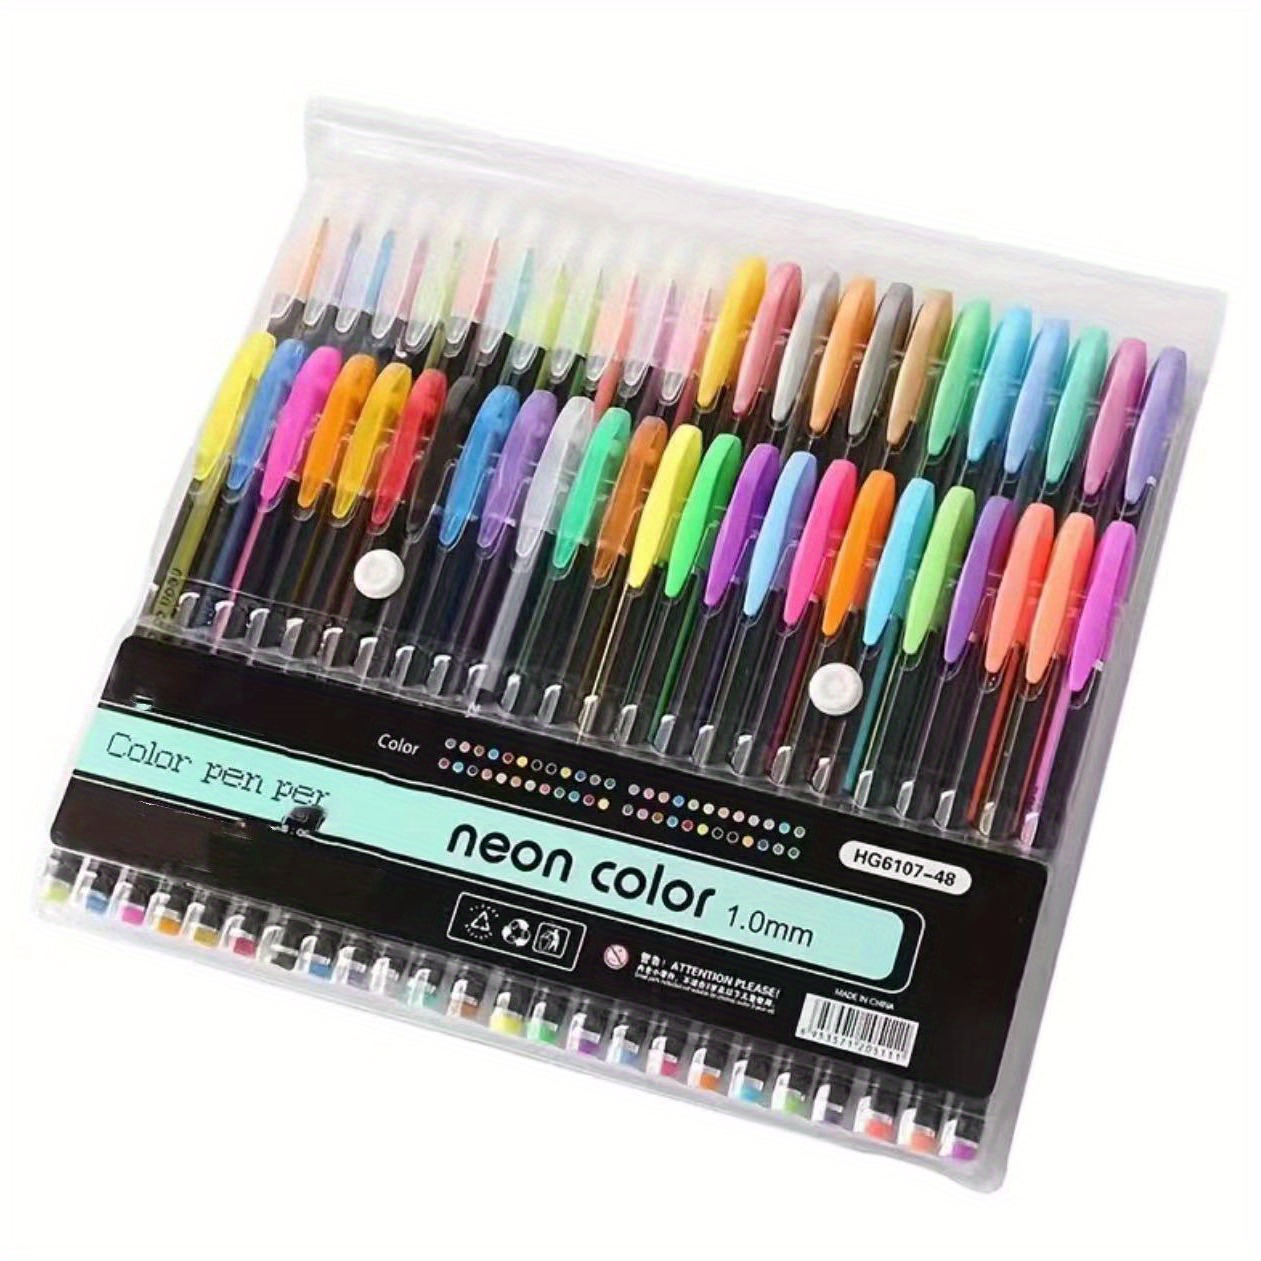 3Leaf Set (Sketchbook+Neon Gel Pens+Colored Pencils+Oil Pastels) -  Northland Wholesale